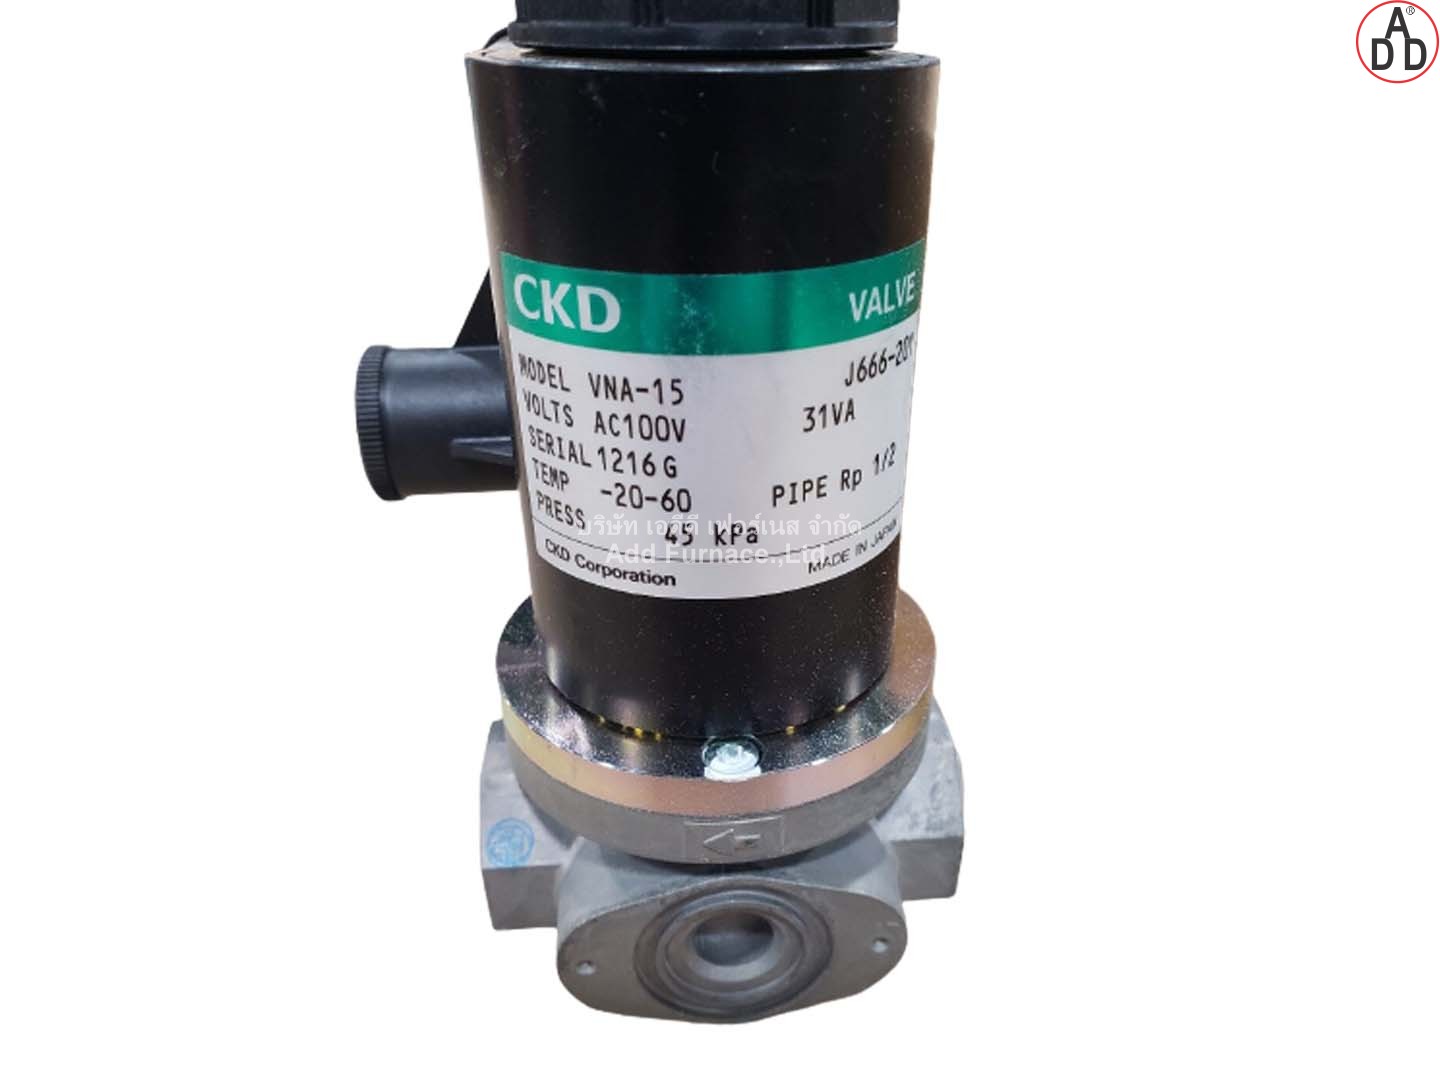 CKD MODEL VNA-15 AC100V - บริษัท เอดีดี เฟอร์เนส จำกัด